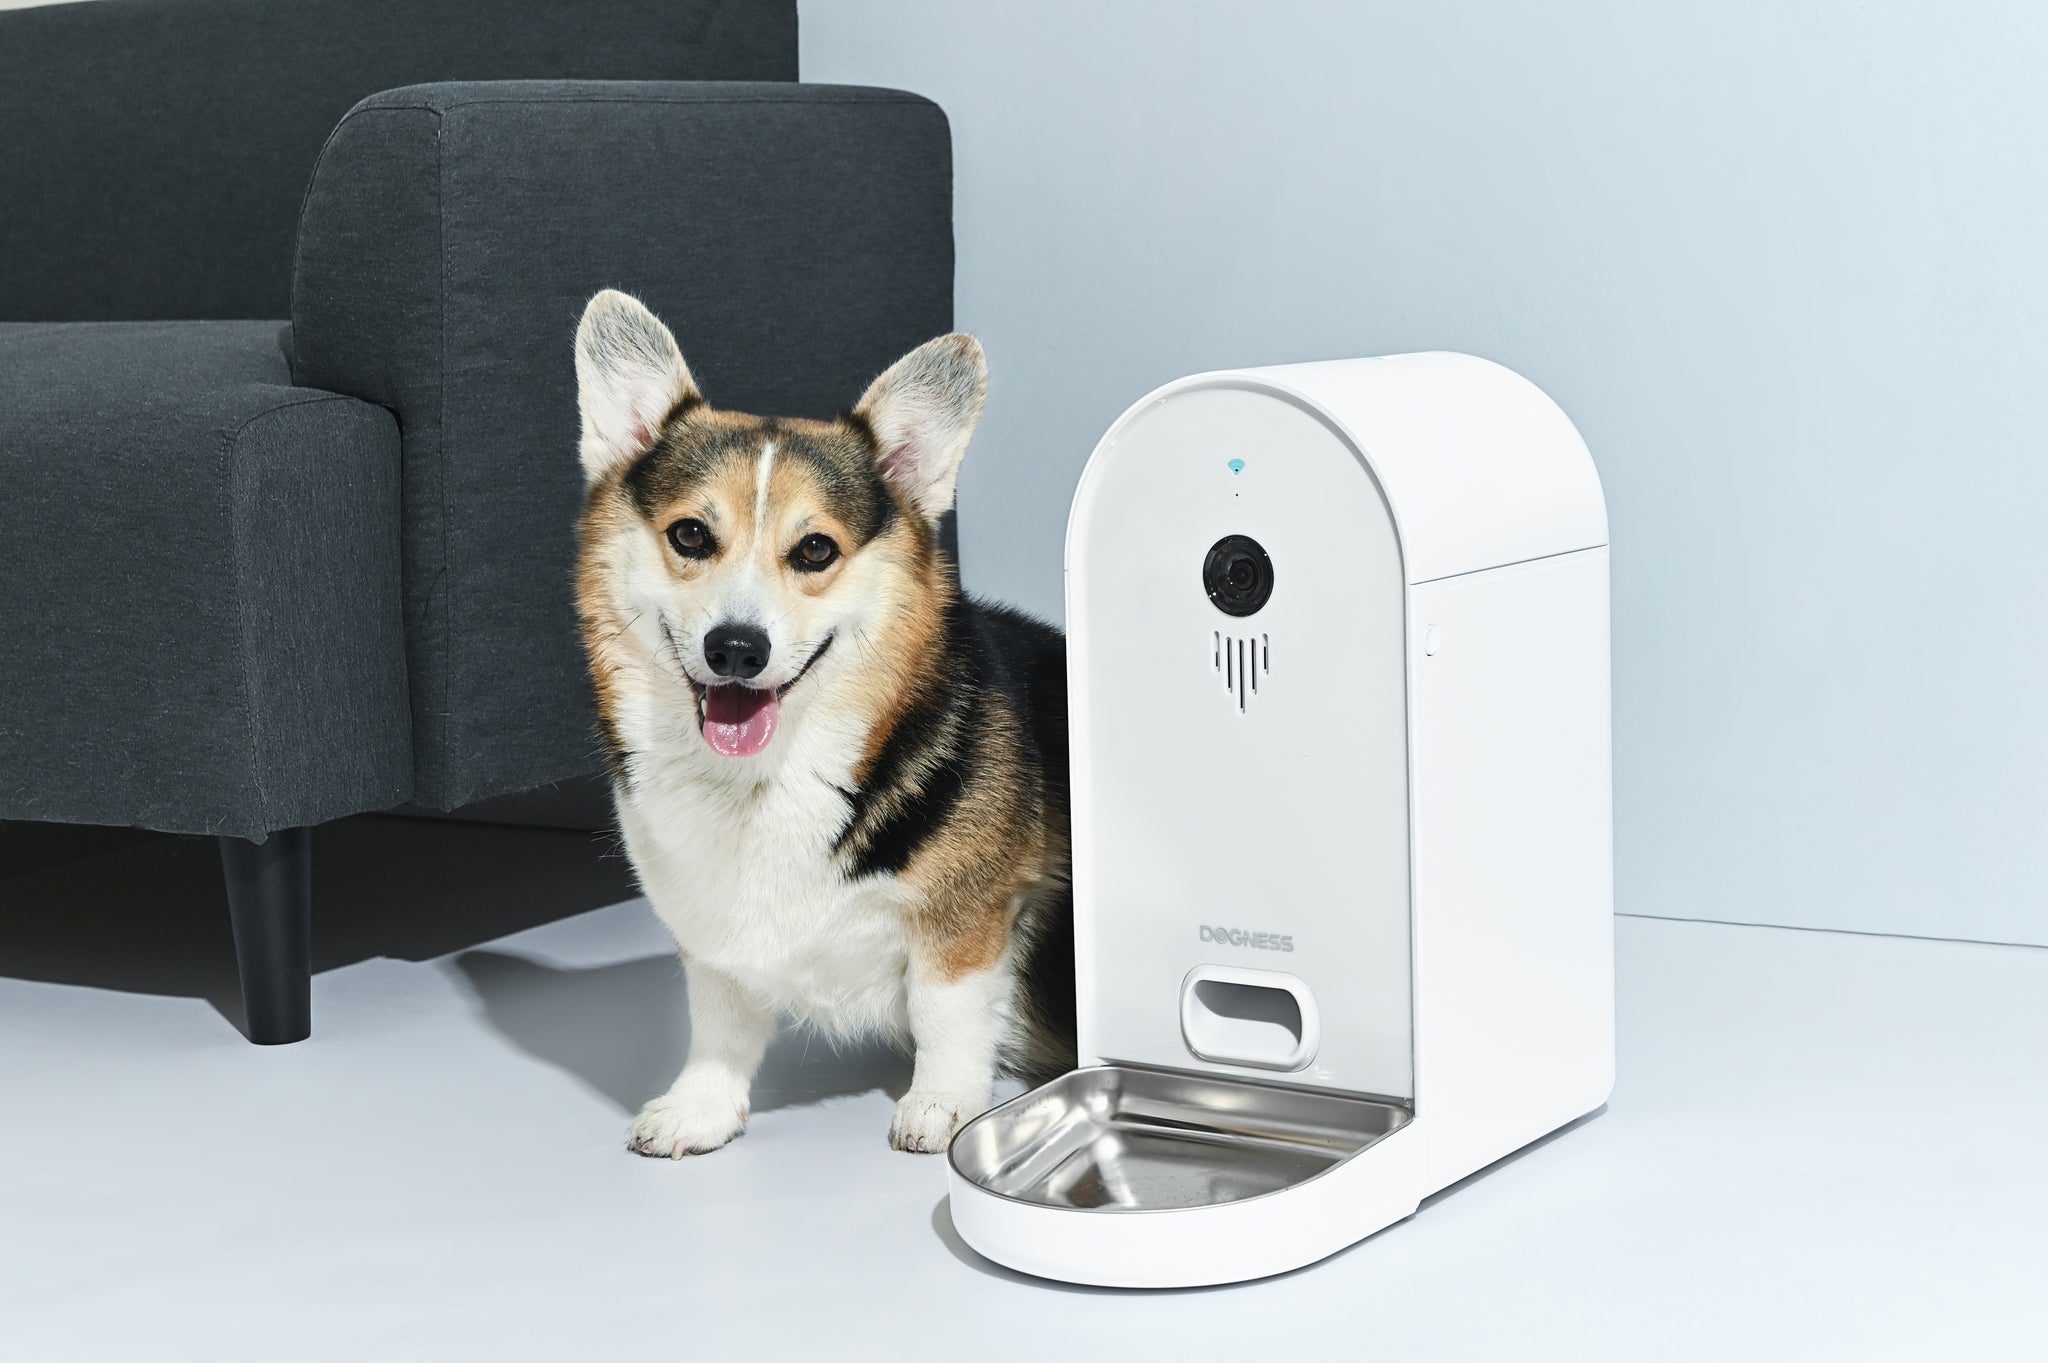 Dogness Smart Cam Treat Dispenser Automatic Feeder & Reviews